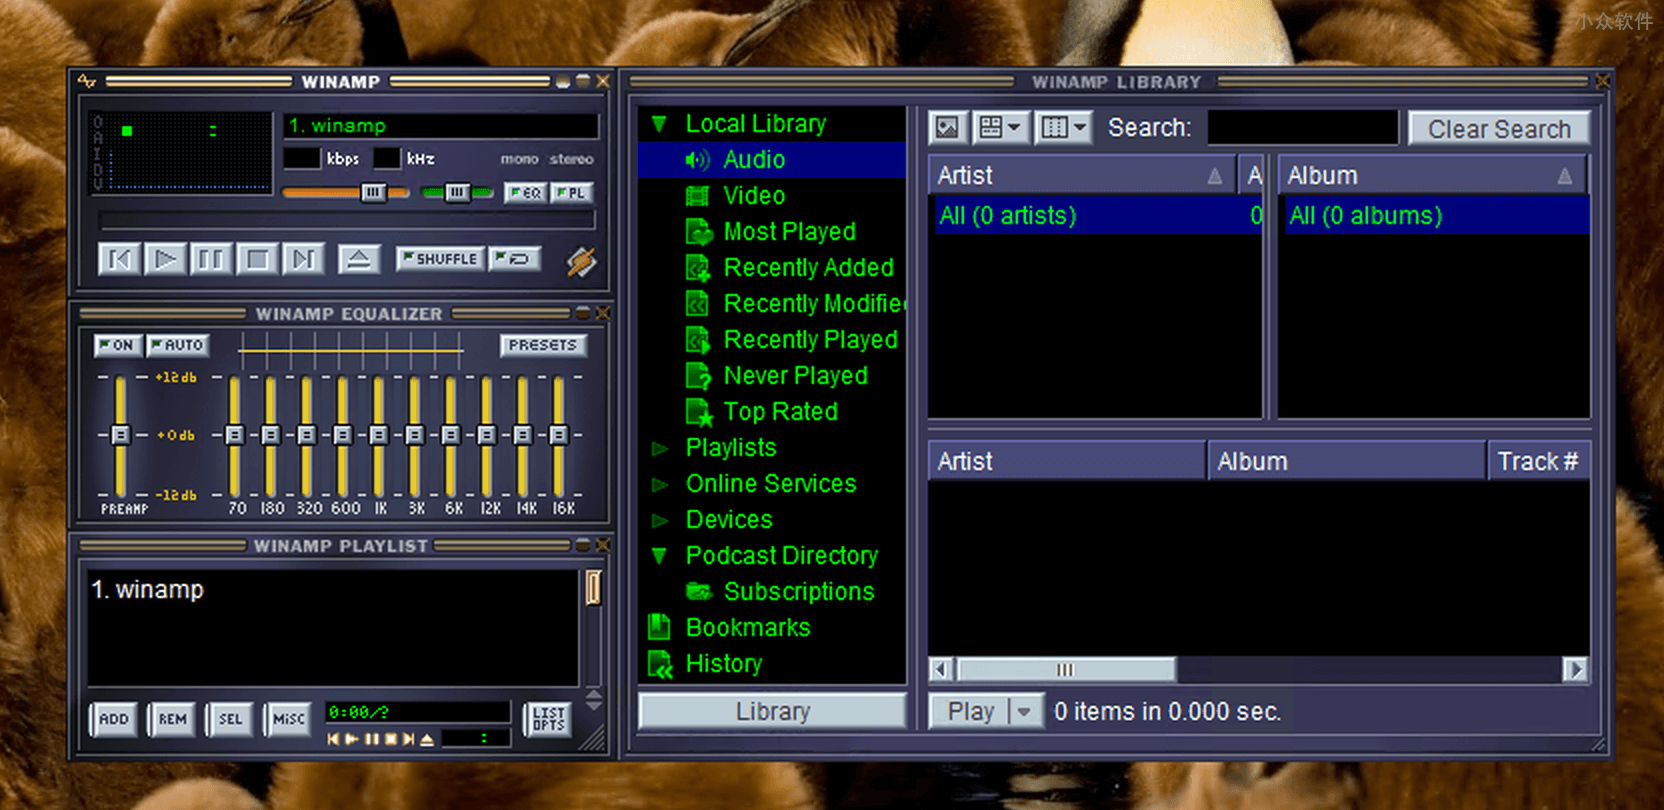 曾经的经典音乐播放器发布 4 年来的第一个版本：Winamp 5.8